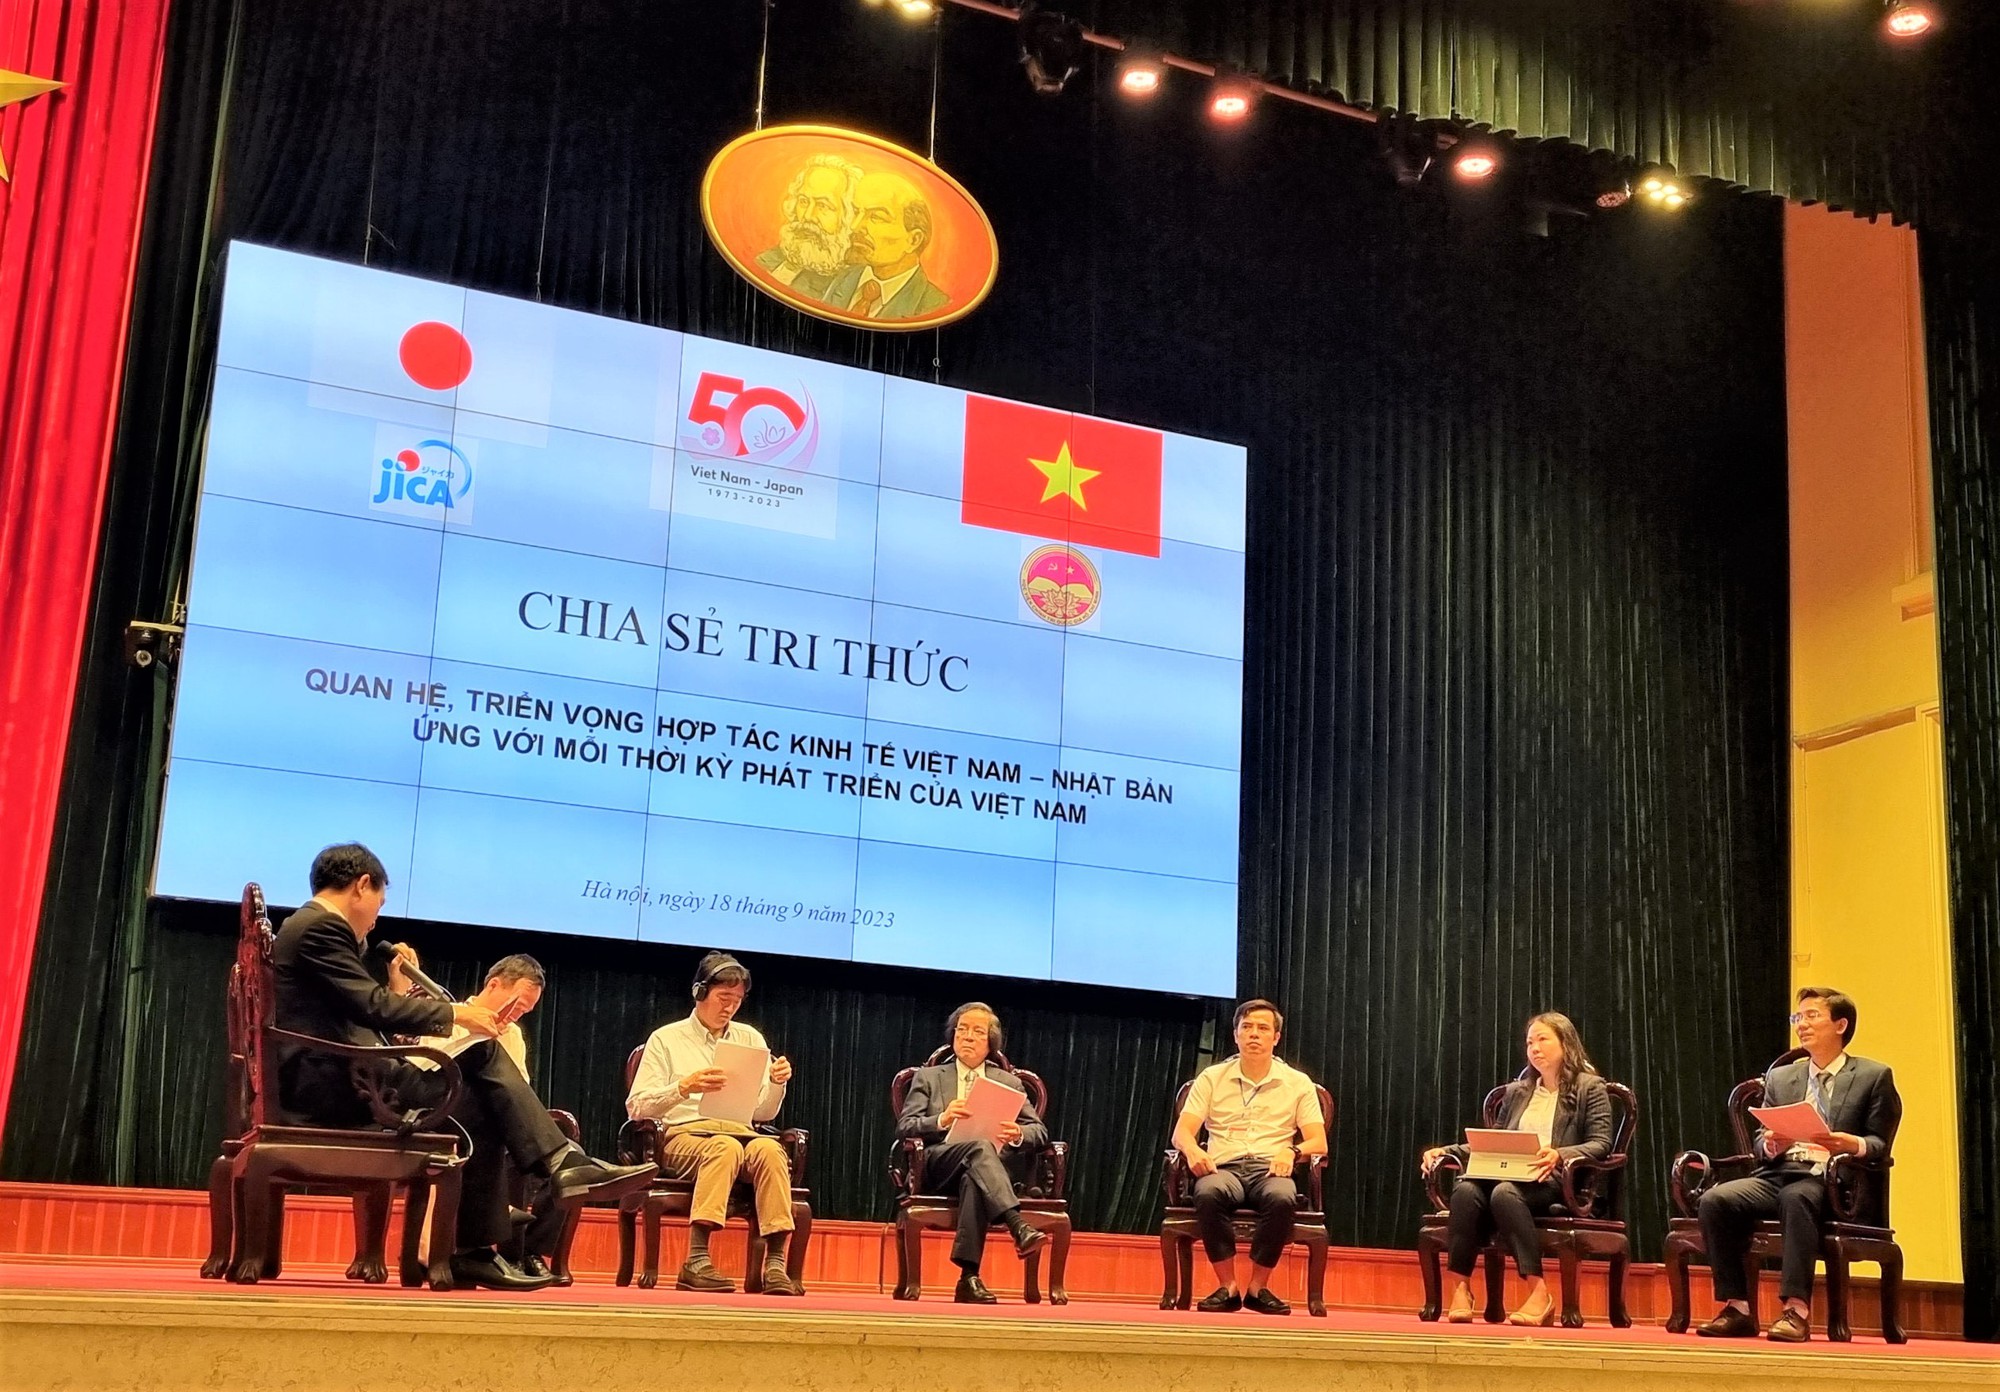 Giáo sư Trần Văn Thọ: Việt Nam có thể phát huy tốt hơn nguồn lực từ Nhật Bản để phát triển đất nước - Ảnh 1.